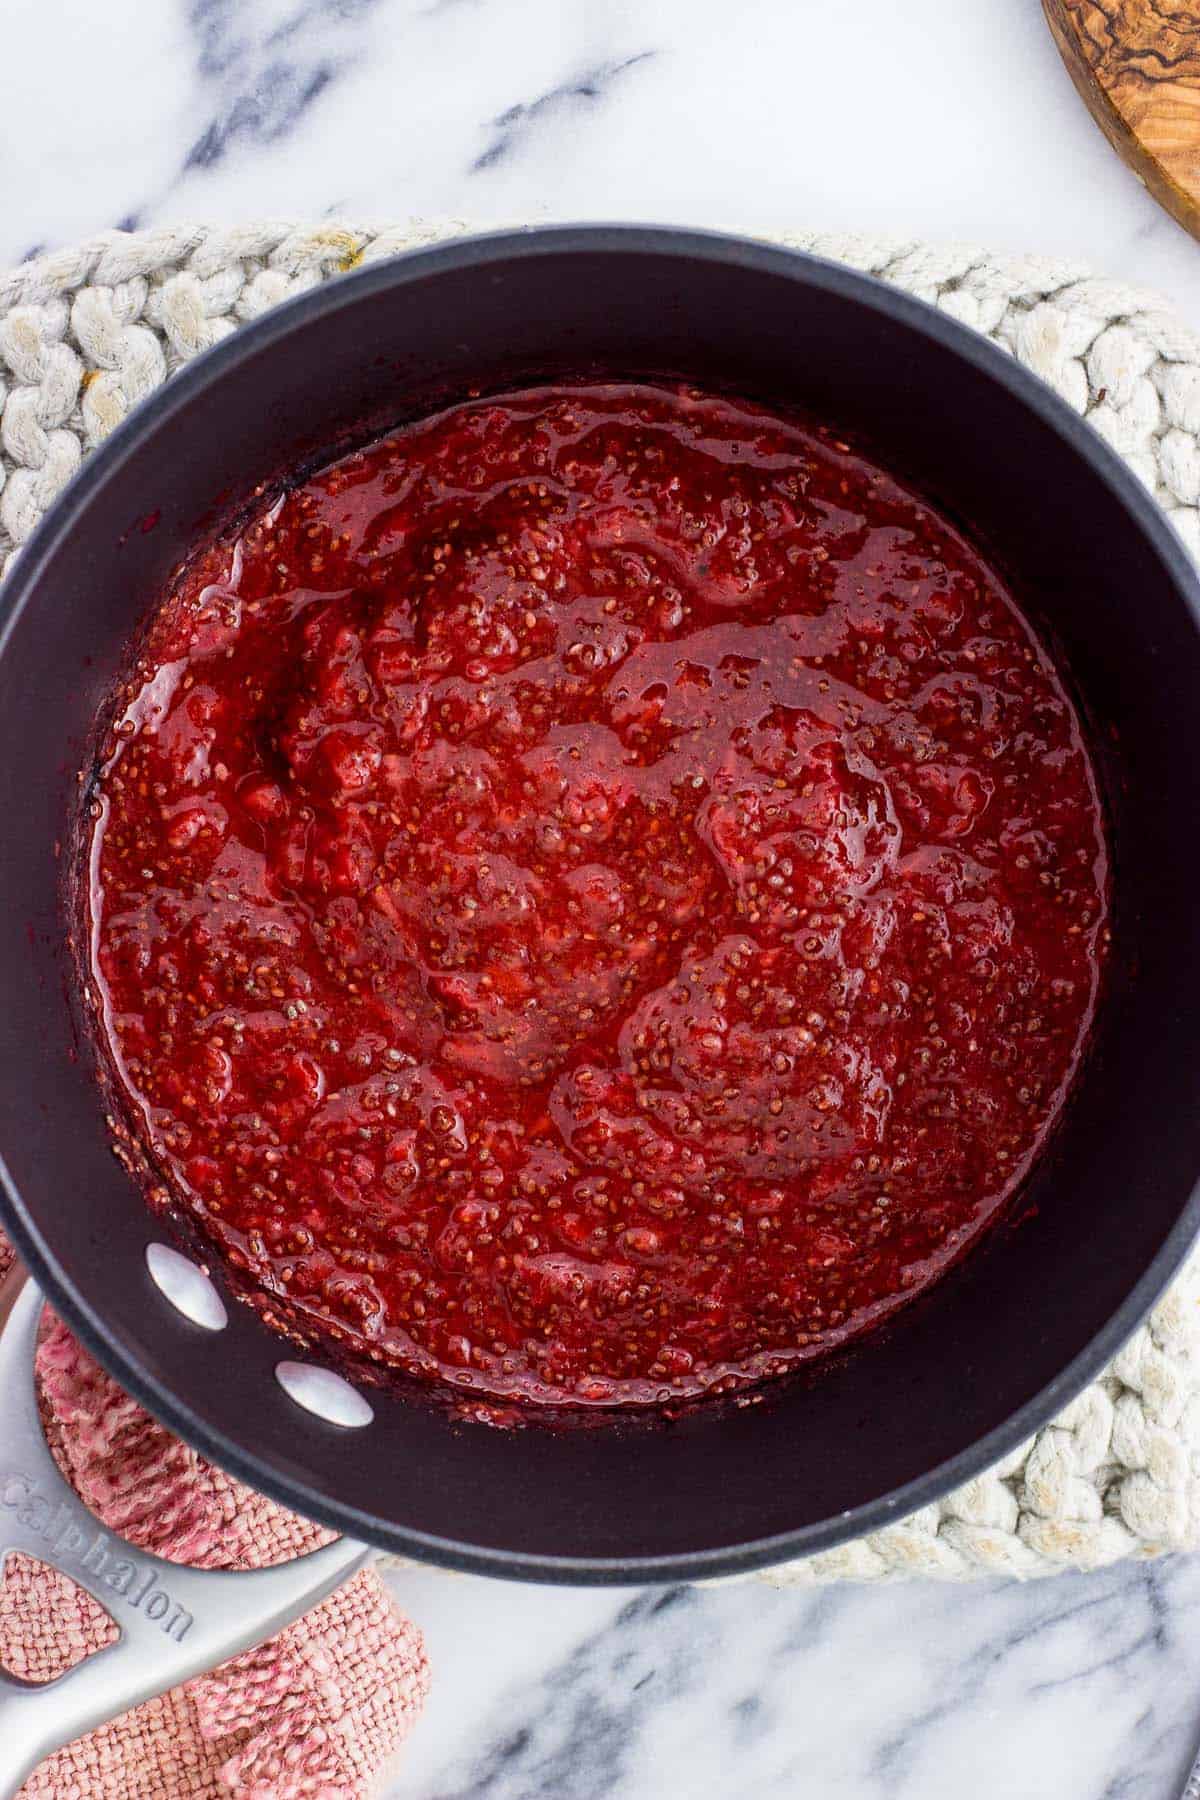 Thickened strawberry chia jam in the saucepan.